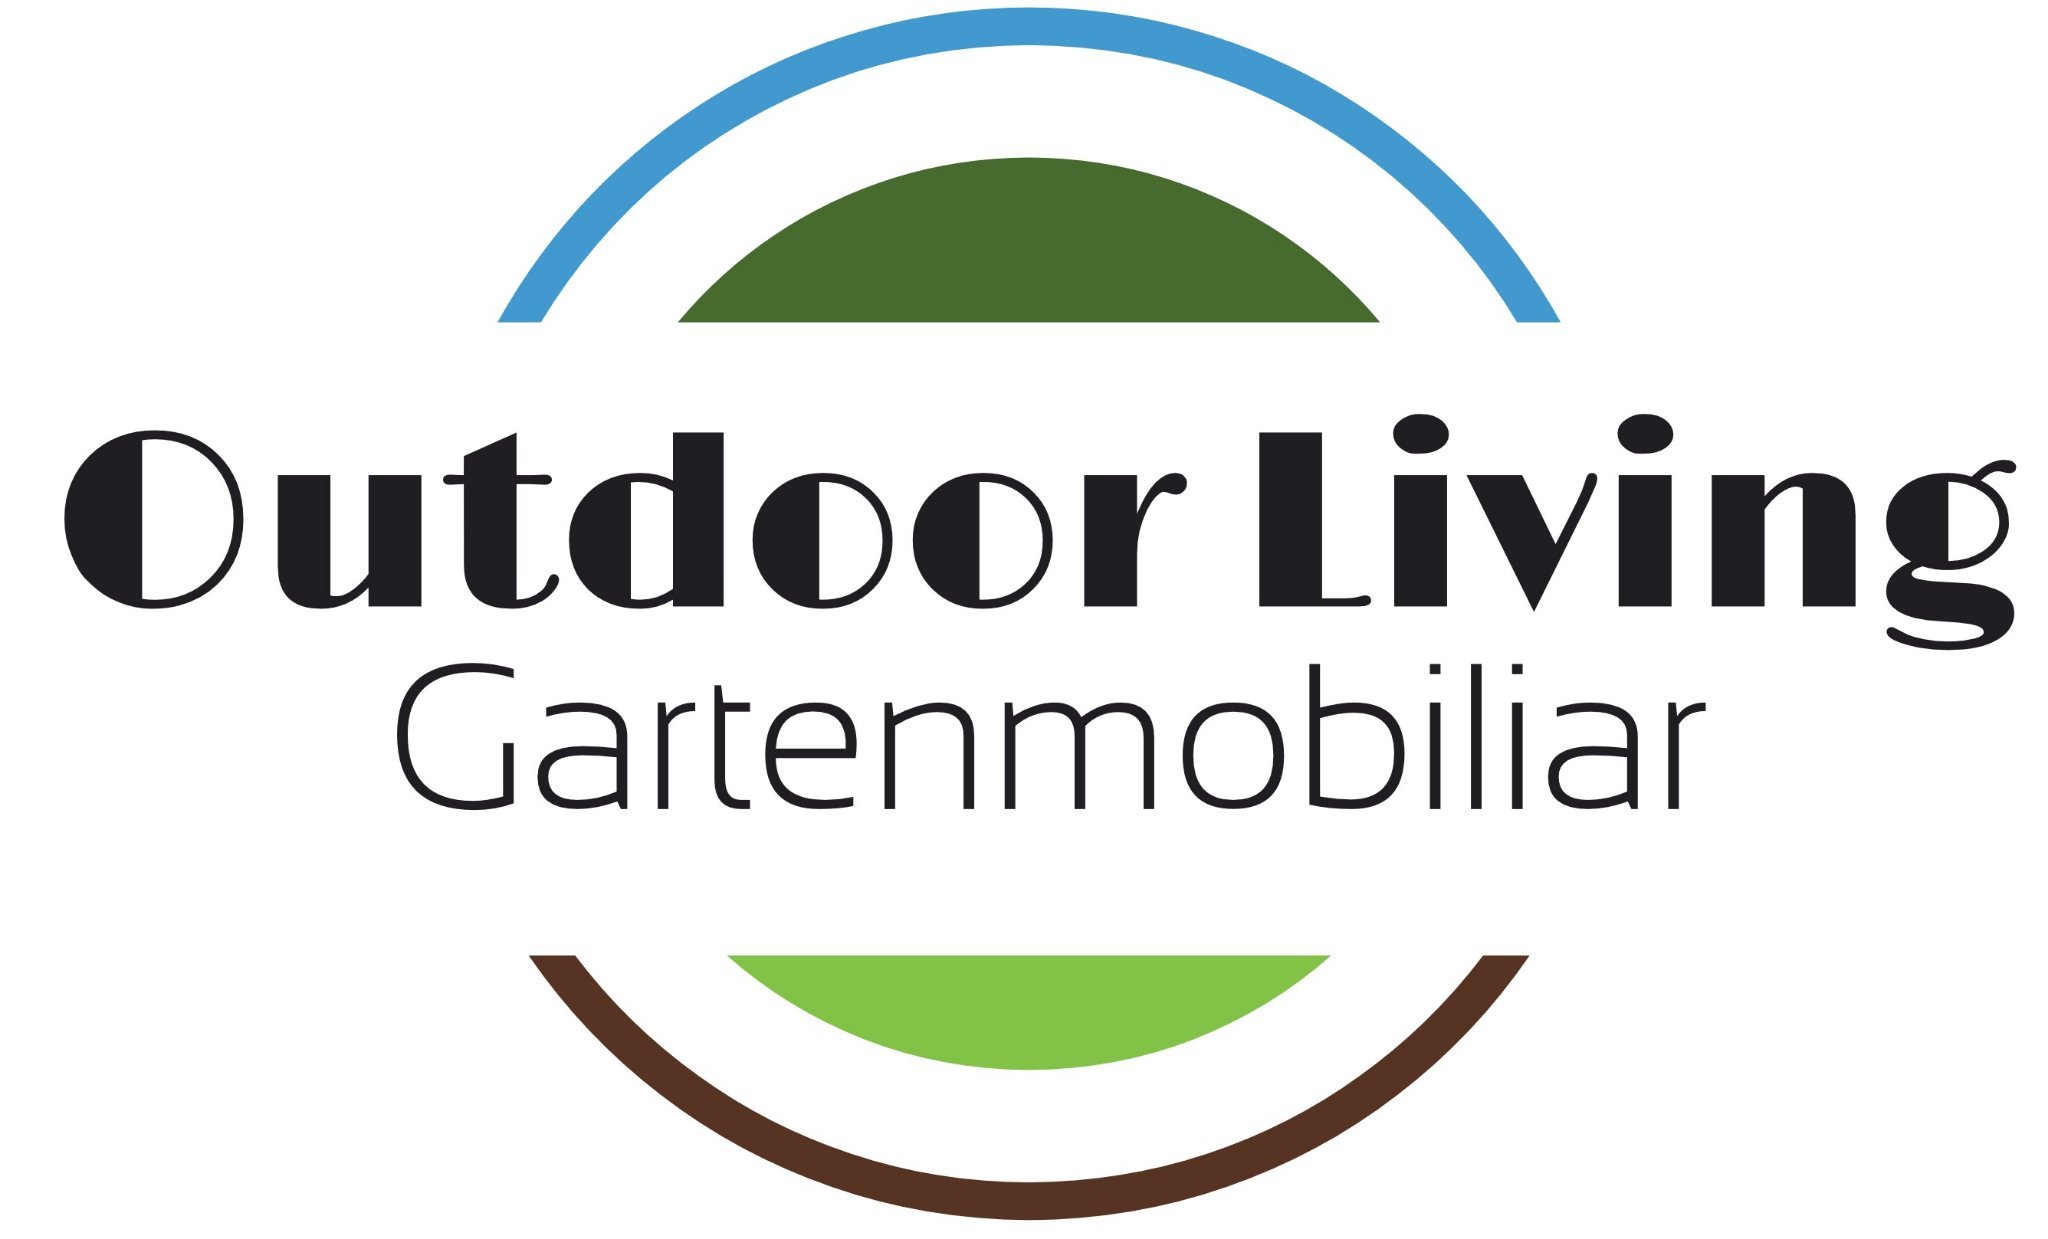 Outdoor Living - Ihr Gartenmöbelspezialist in Ostfriesland!